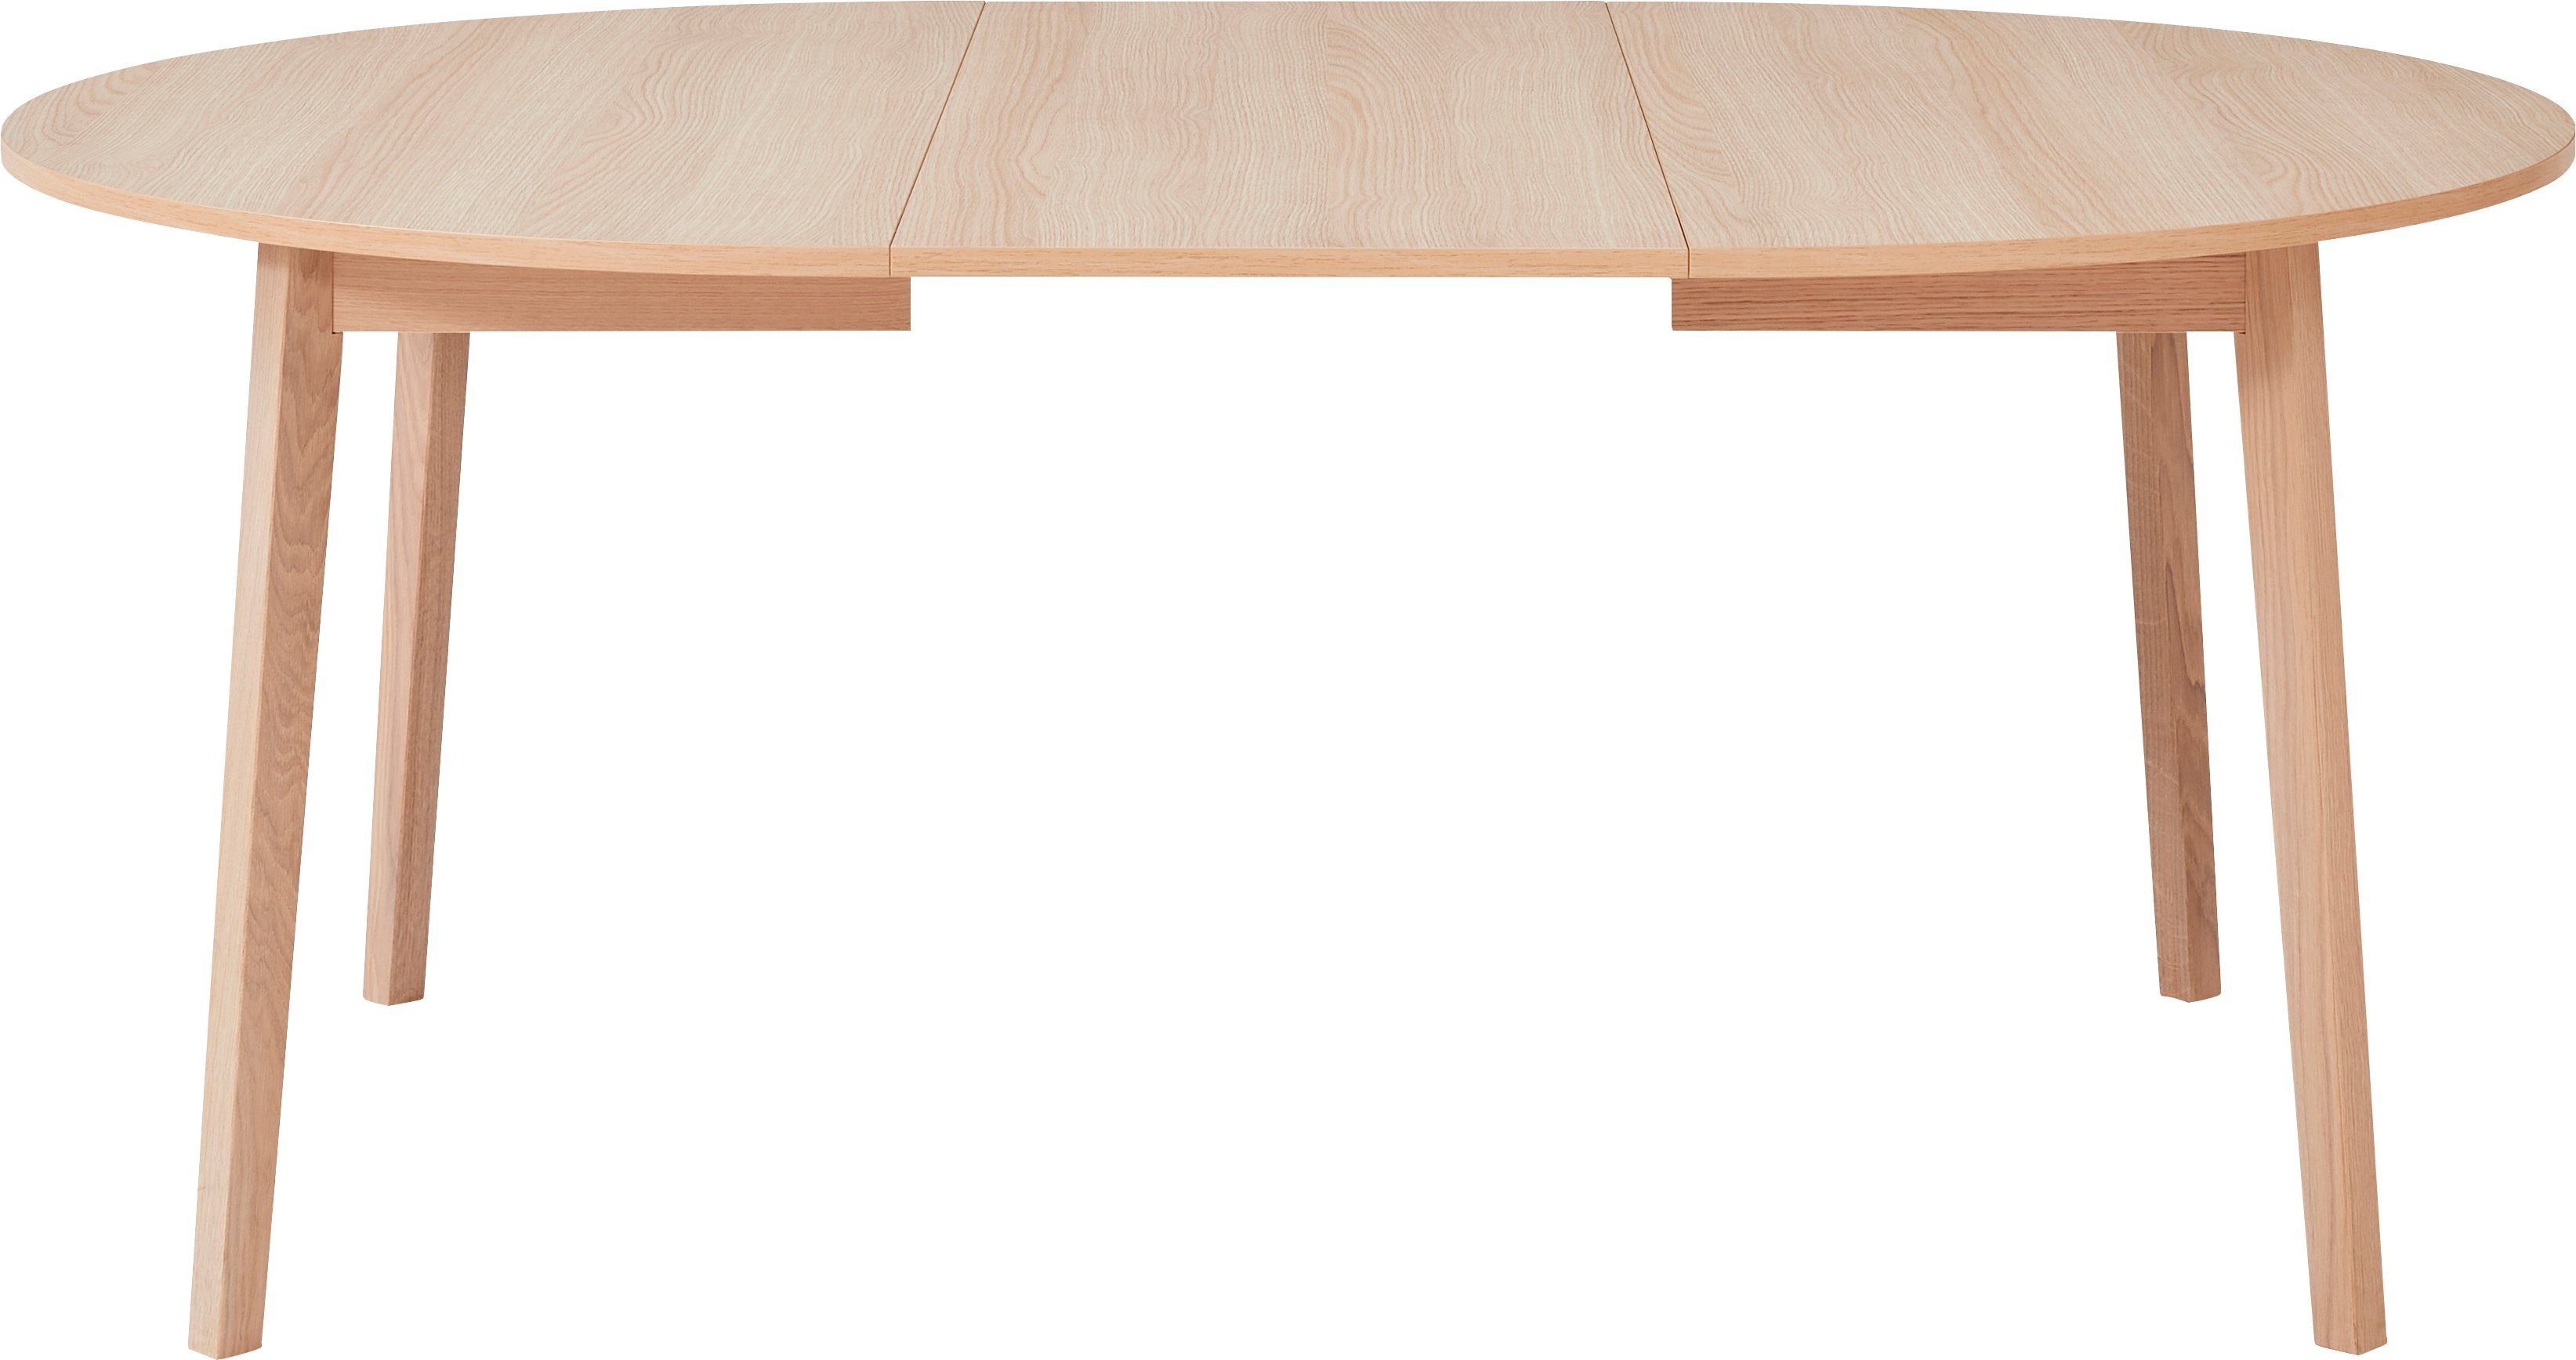 Hammel Furniture Esstisch Basic by Gestell Einlegeplatten Massivholz, inklusive aus 2 Naturfarben cm, Ø130/228 Single, Hammel